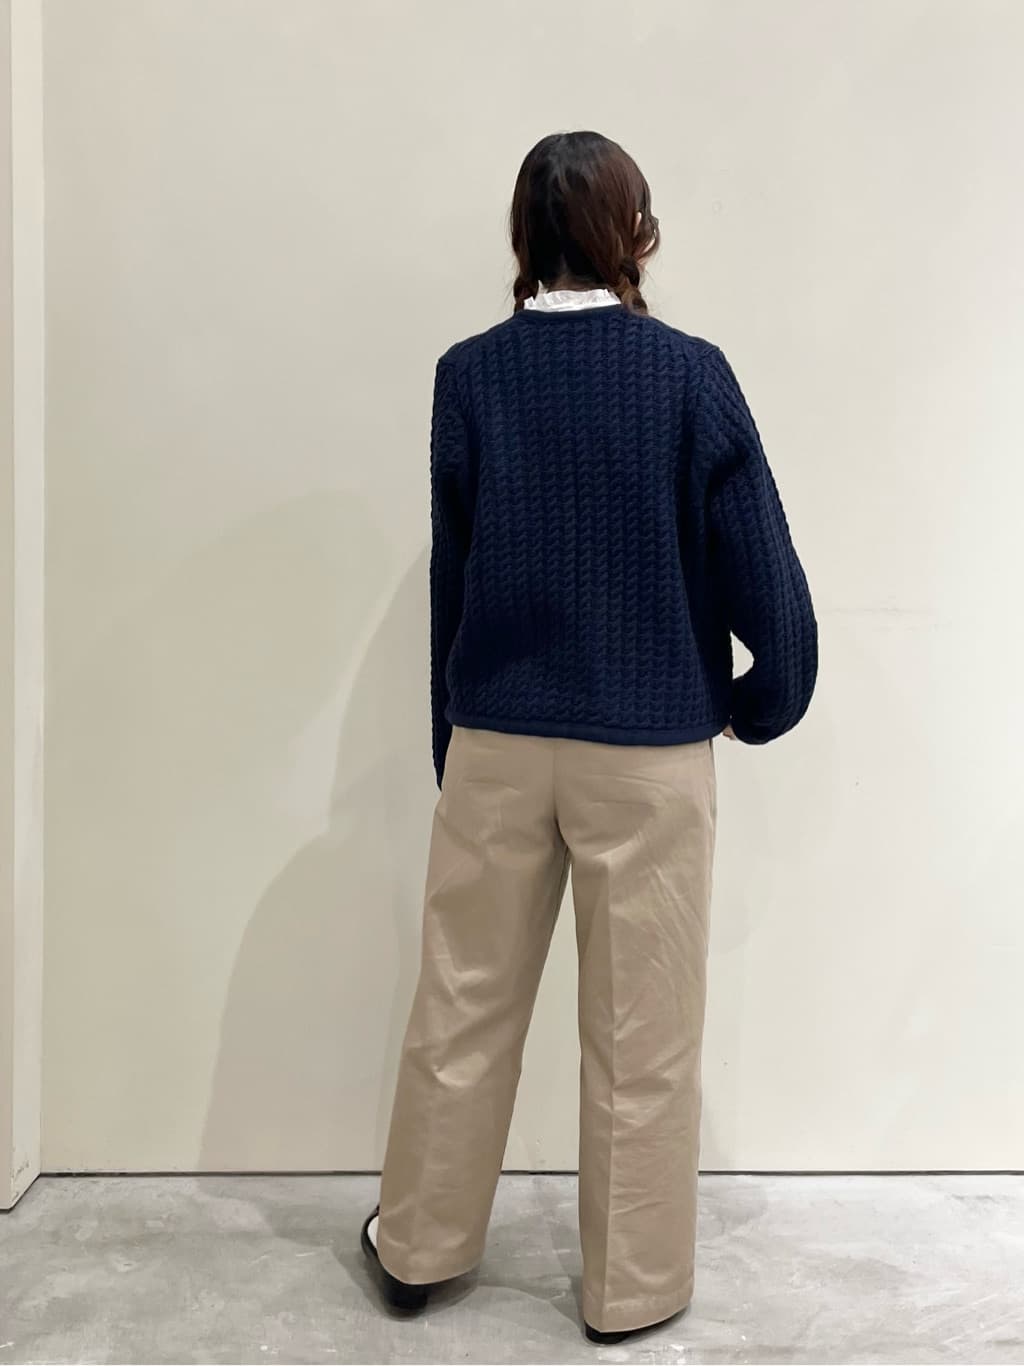 CHILD WOMAN CHILD WOMAN , PAR ICI 新宿ミロード 身長：154cm 2022.09.12